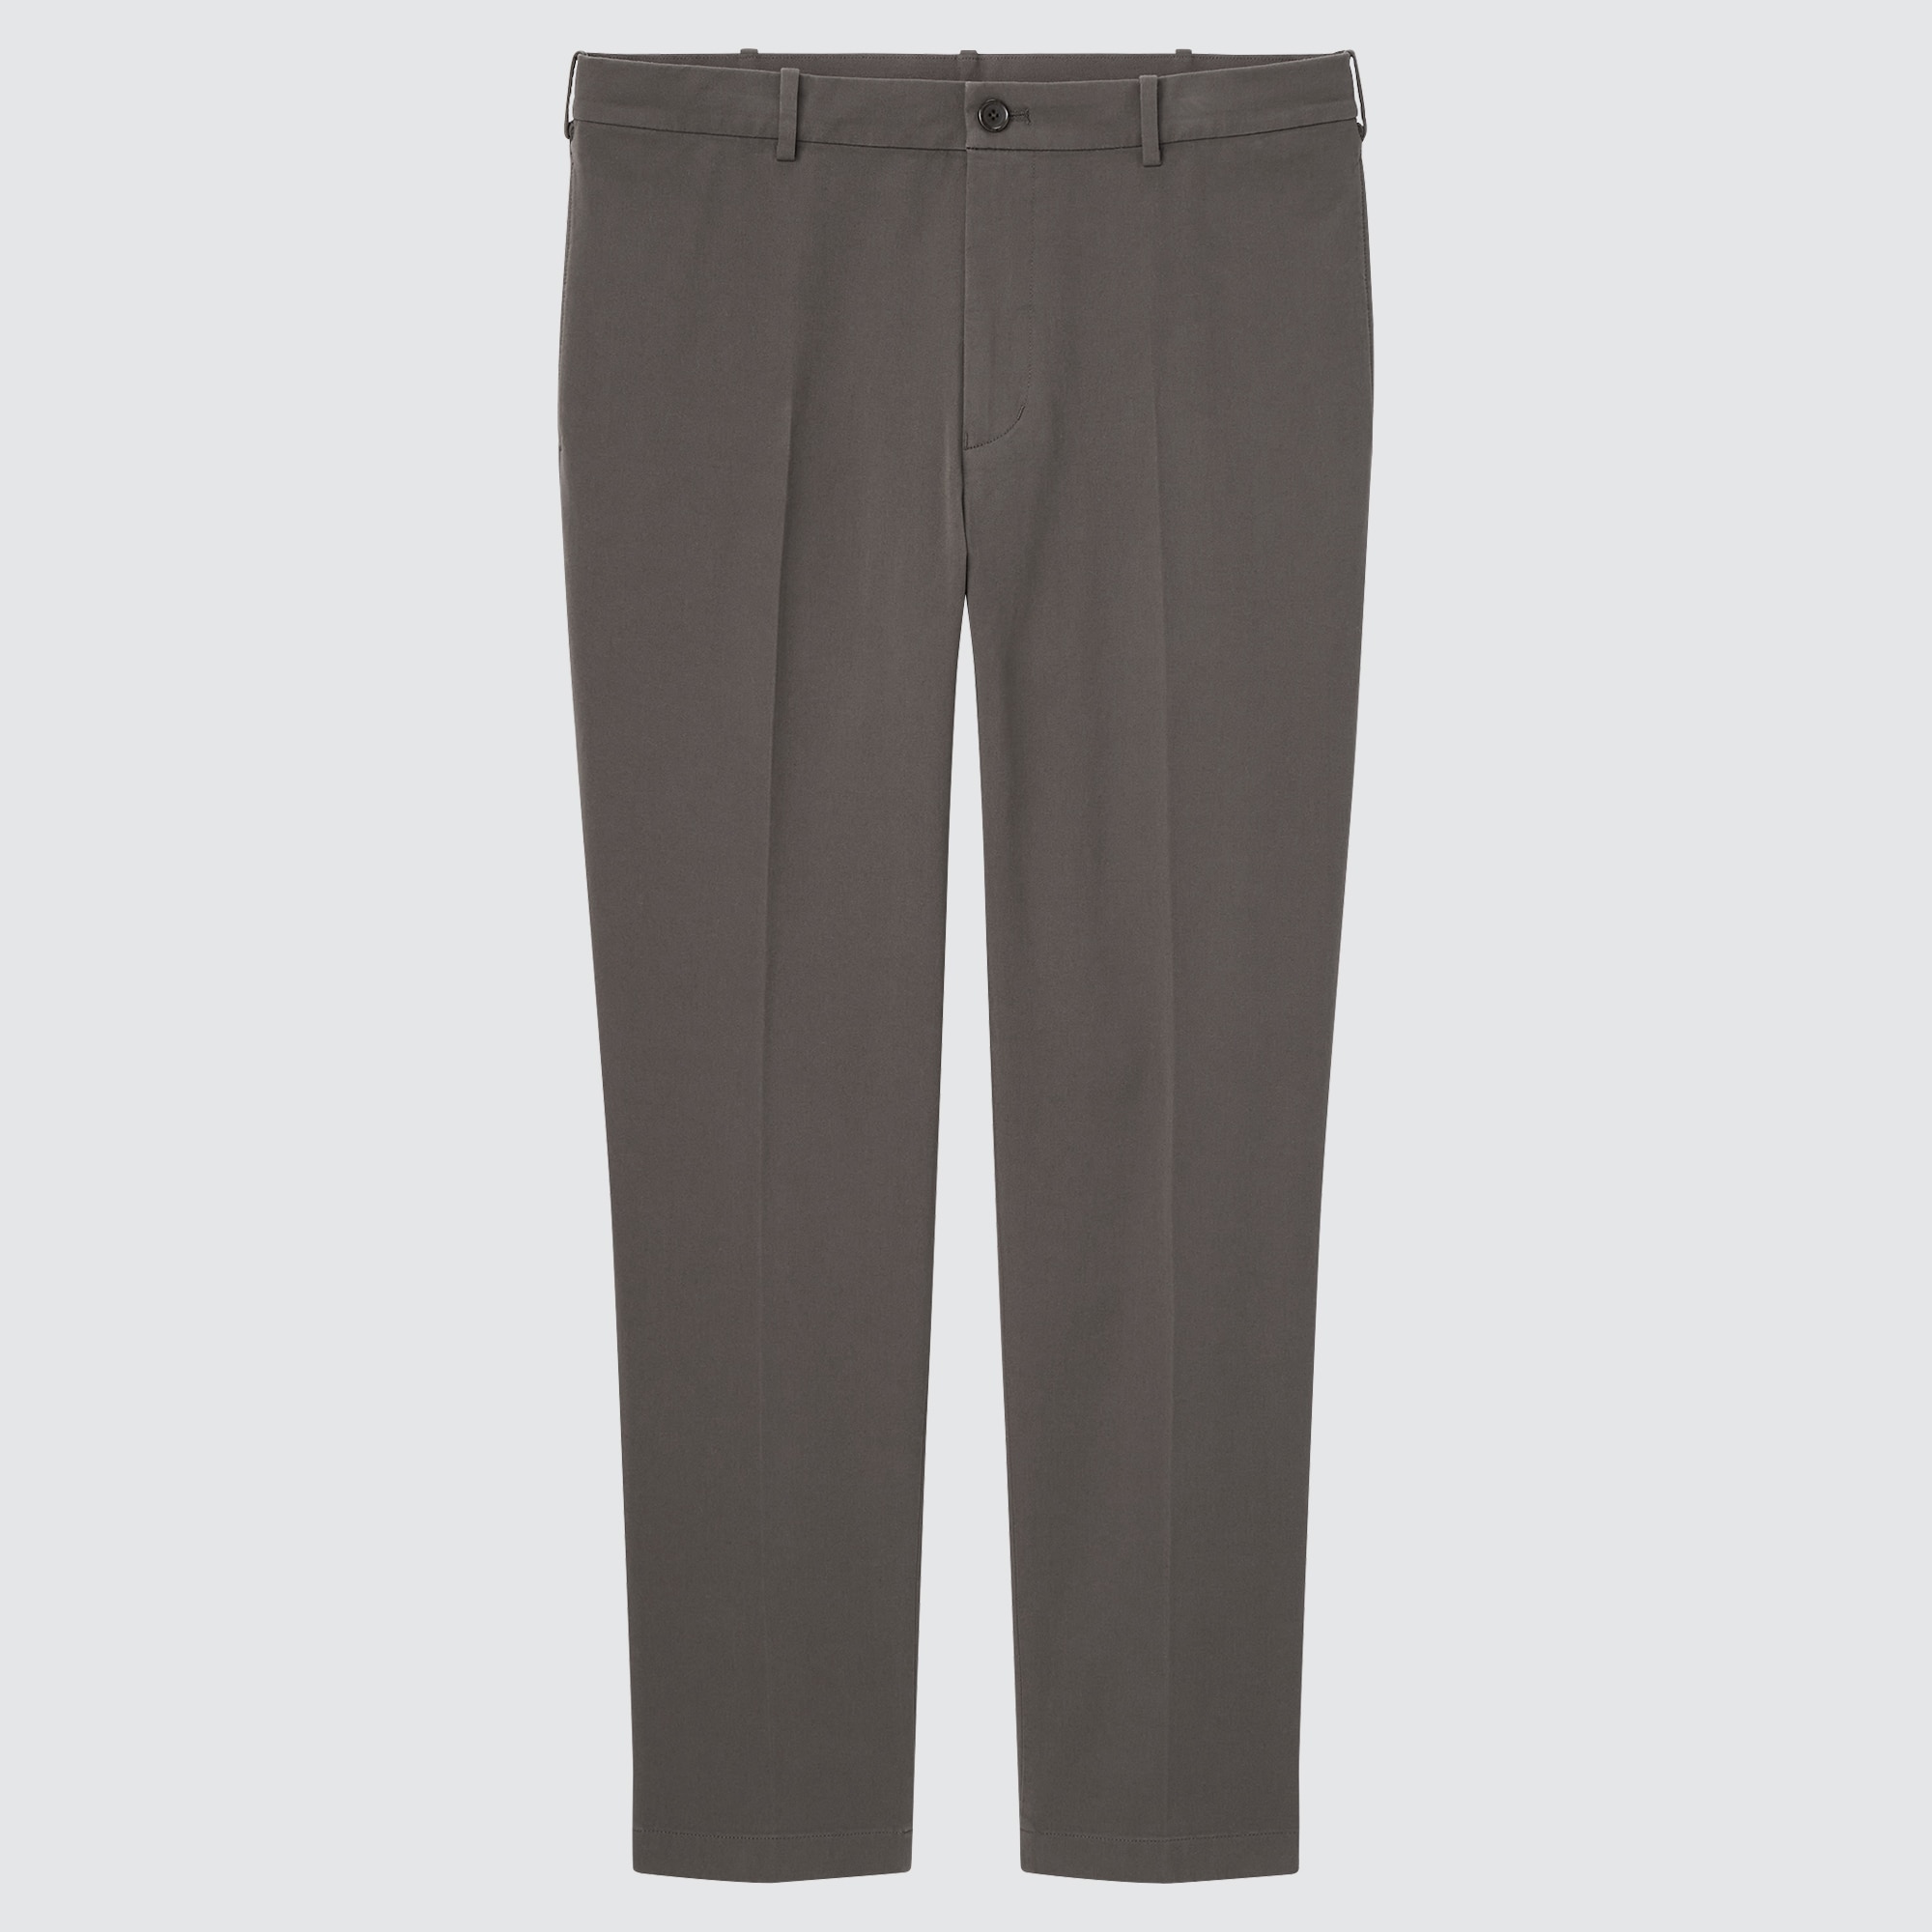 Lee Shapetastic Hidden Hold Women's 8 Jean Pants w/Ankle Zip 2pc Lot Pink  & Blue | eBay